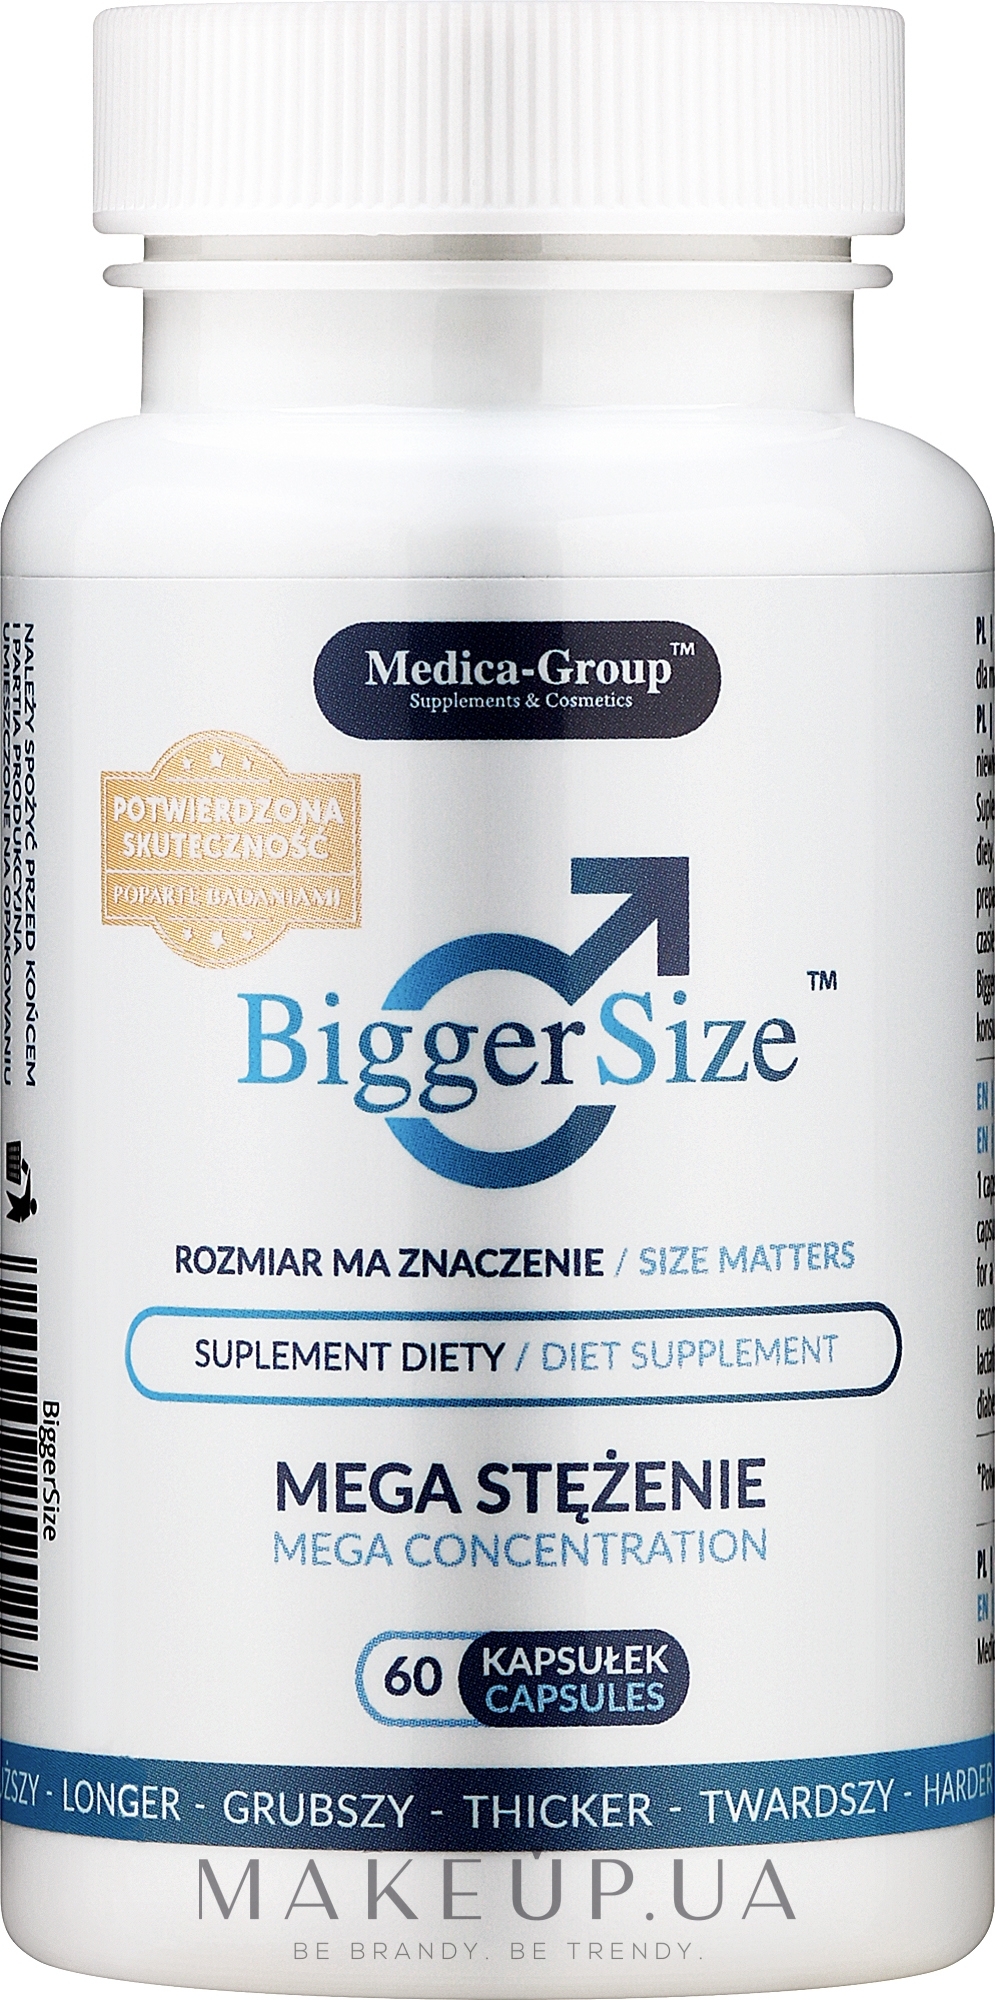 Капсулы для увеличения полового члена - Medica-Group Bigger Size Diet Supplement: купить по лучшей цене в Украине | Makeup.ua